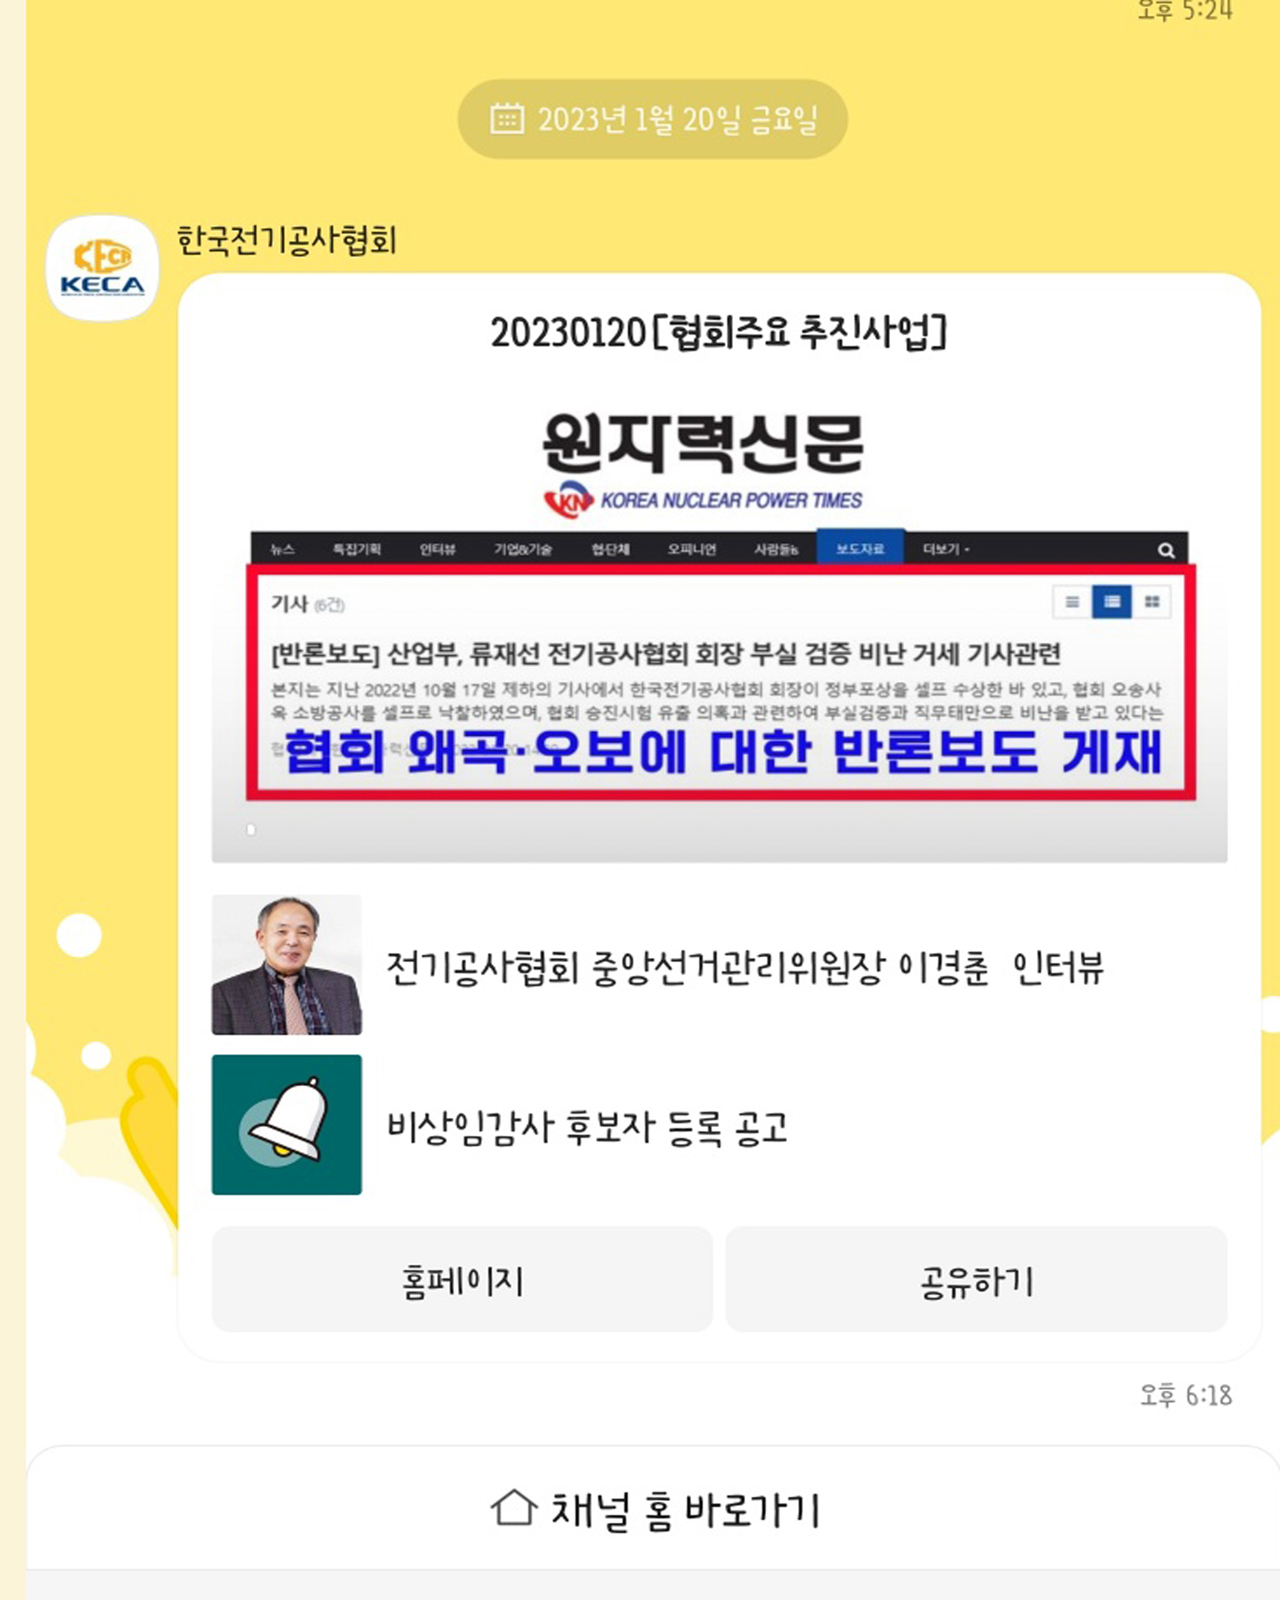 한국전기공사협회 공식 운영 SNS 카톡방